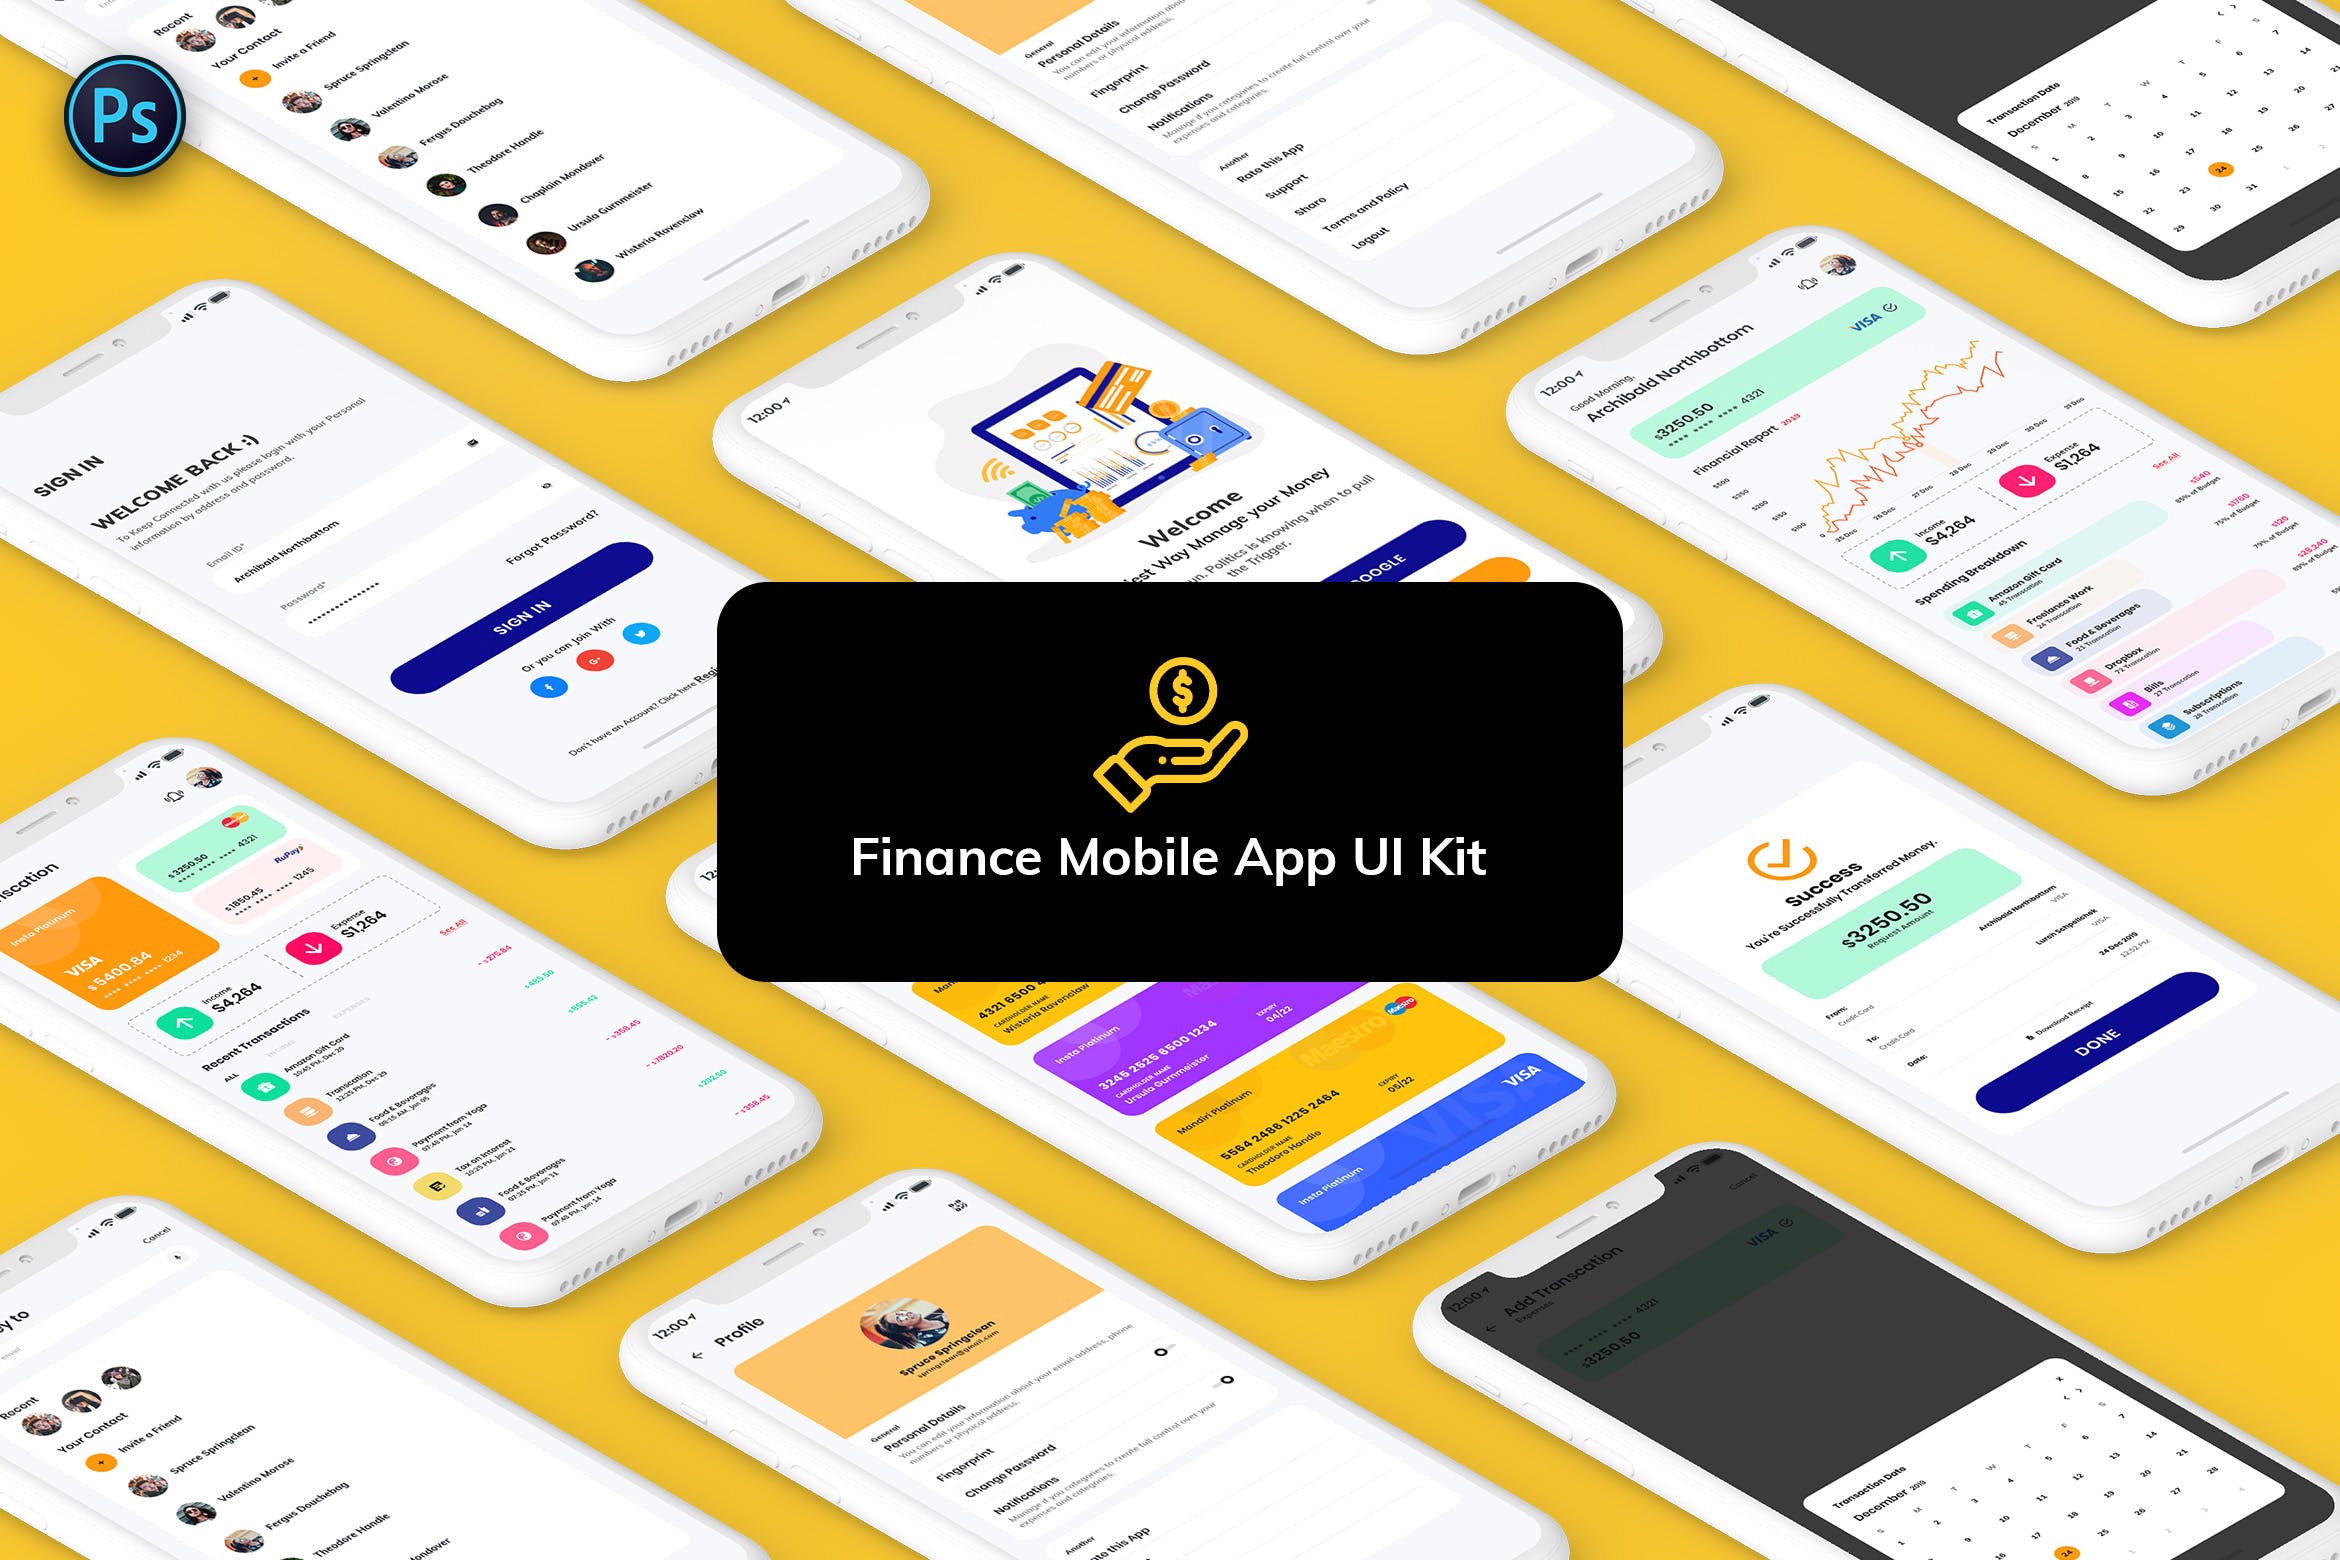 金融网上交易APP应用UI界面设计大洋岛精选模板 Finance Mobile App Template UI Kit Light Version插图